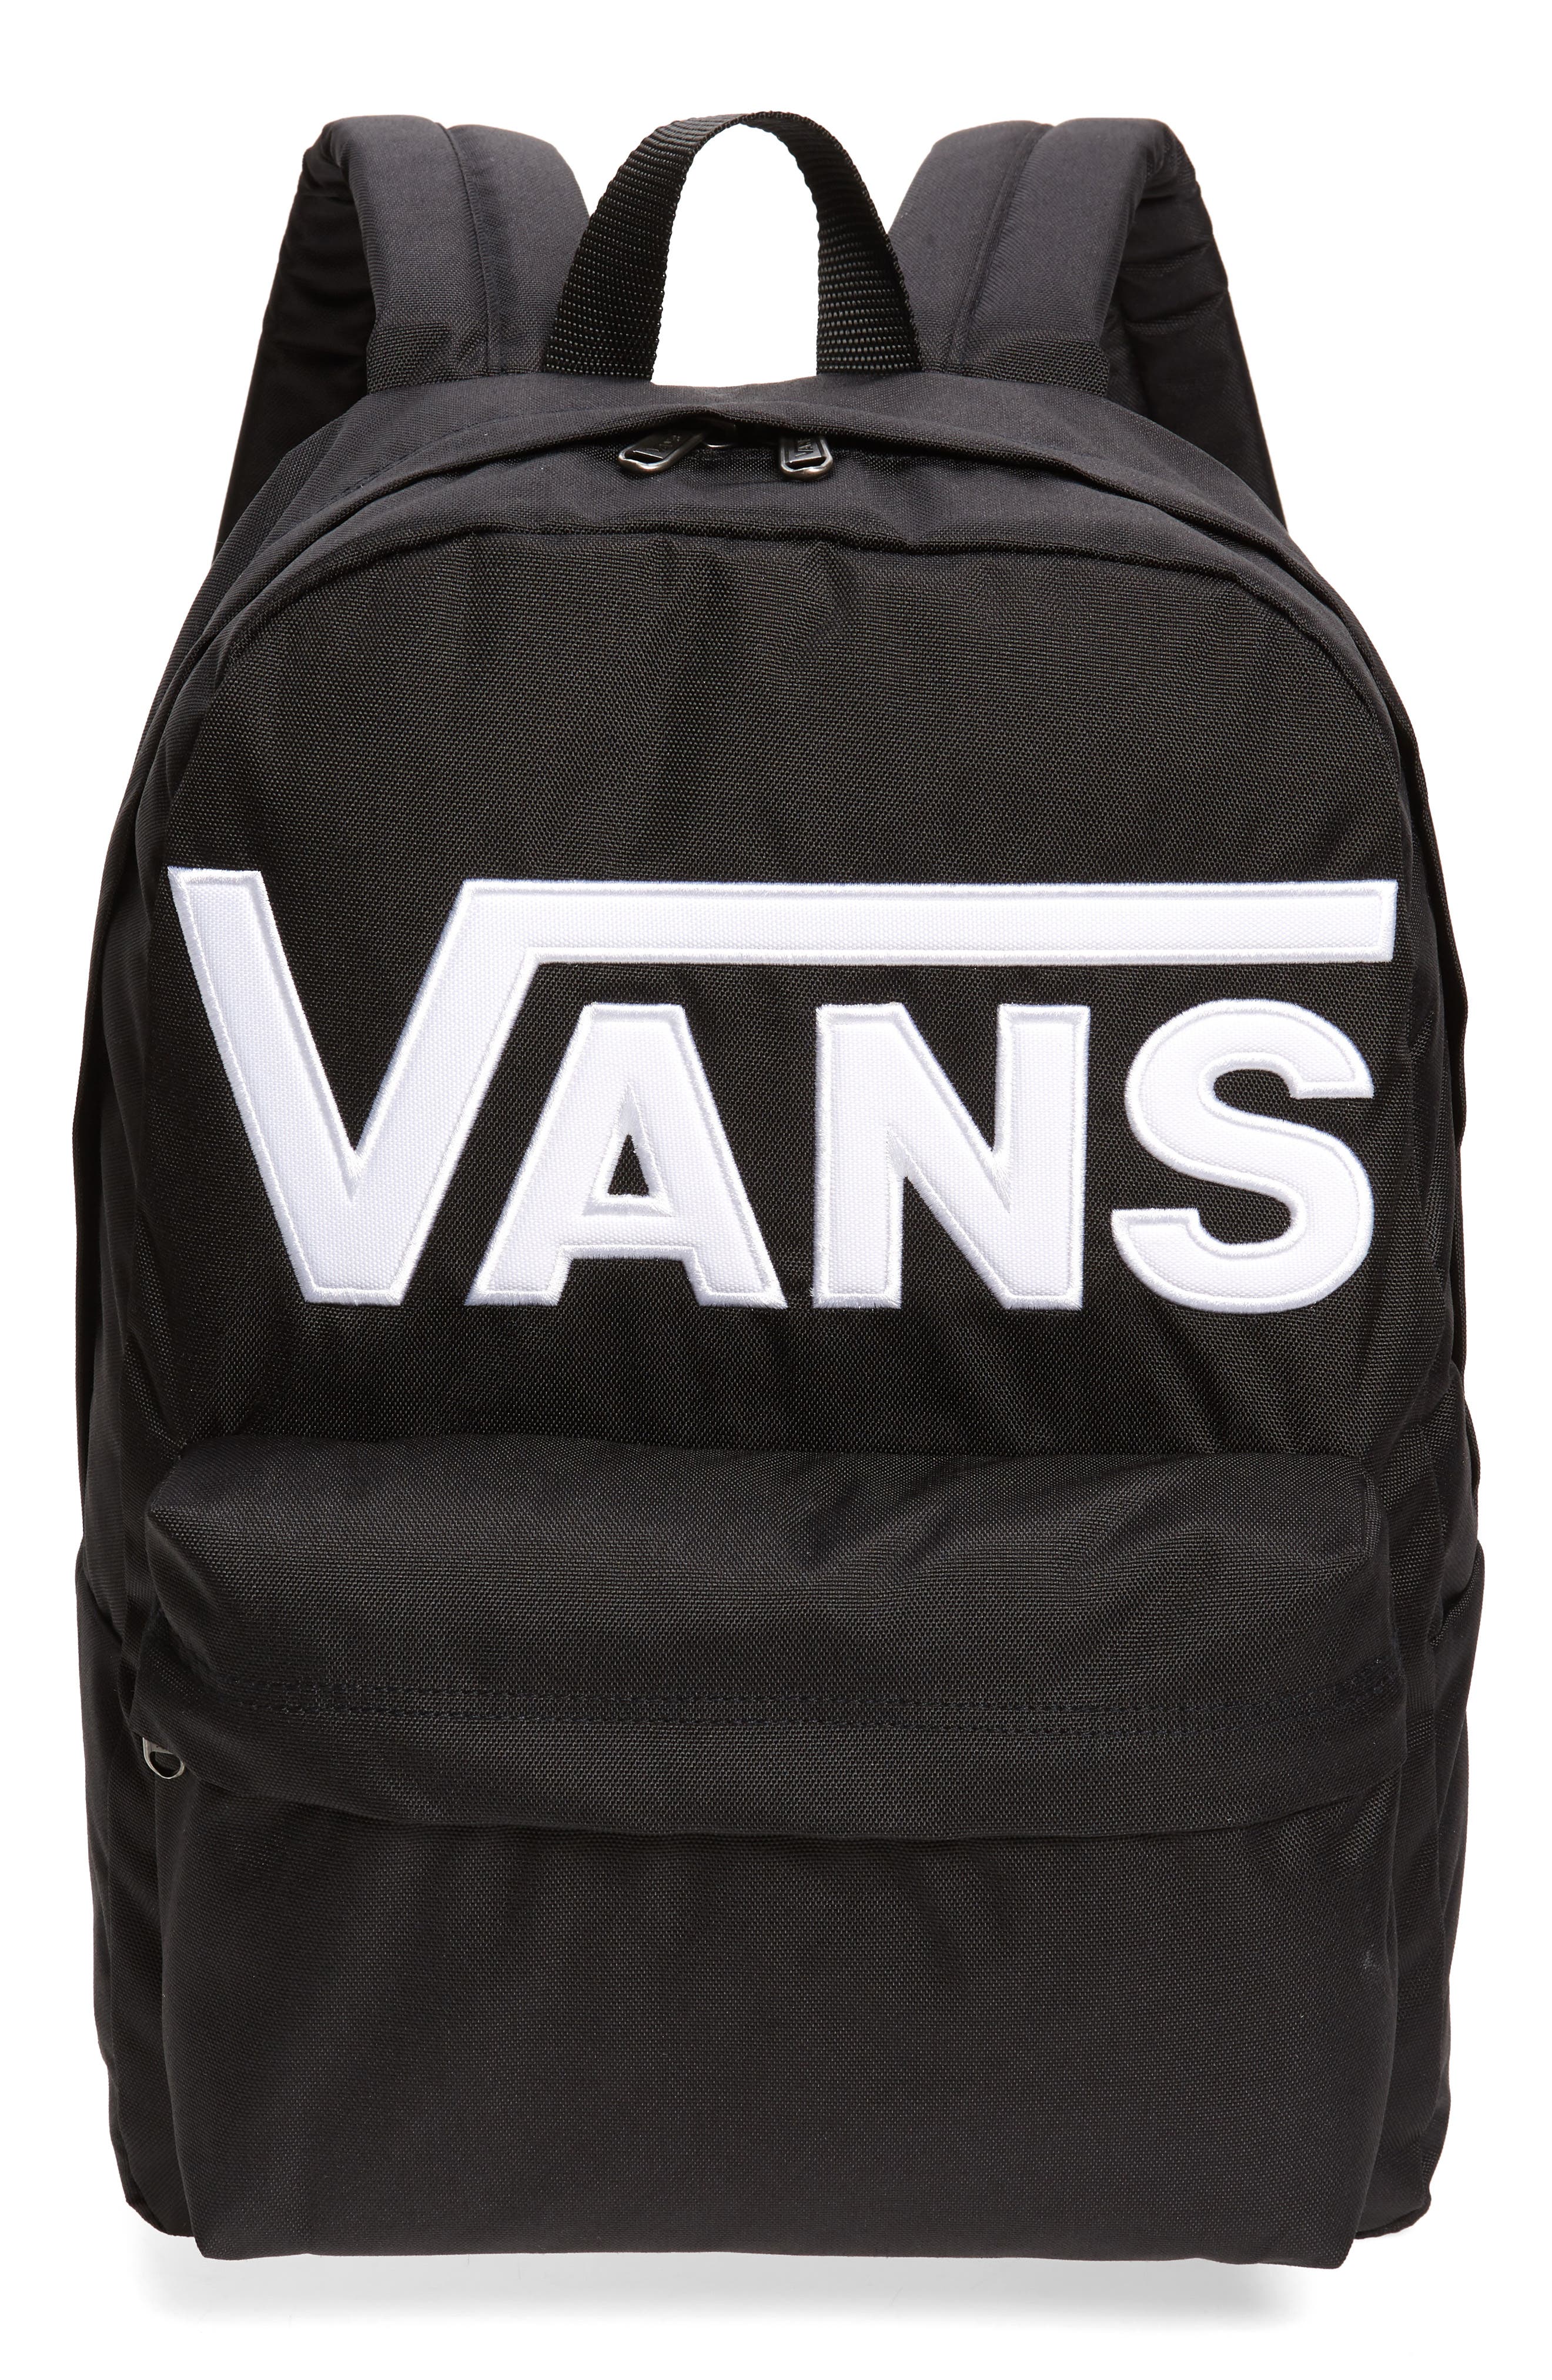 vans backpacks for boys